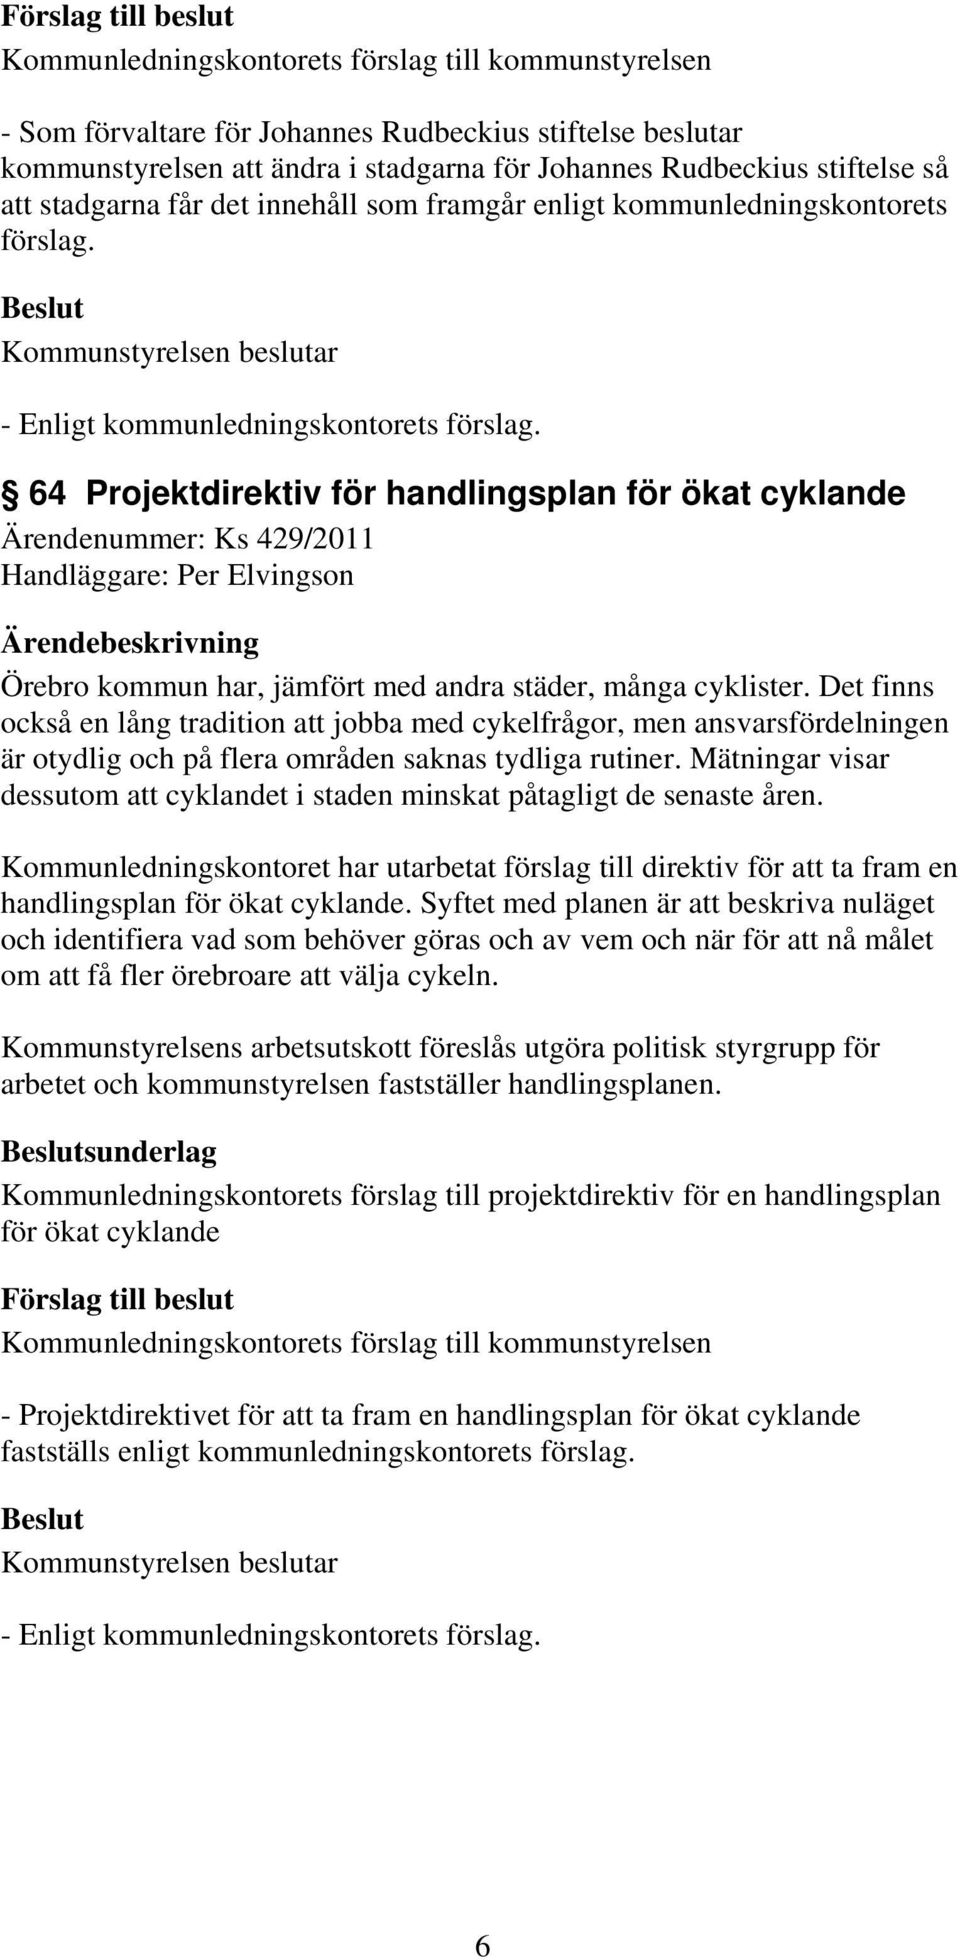 64 Projektdirektiv för handlingsplan för ökat cyklande Ärendenummer: Ks 429/2011 Handläggare: Per Elvingson Örebro kommun har, jämfört med andra städer, många cyklister.